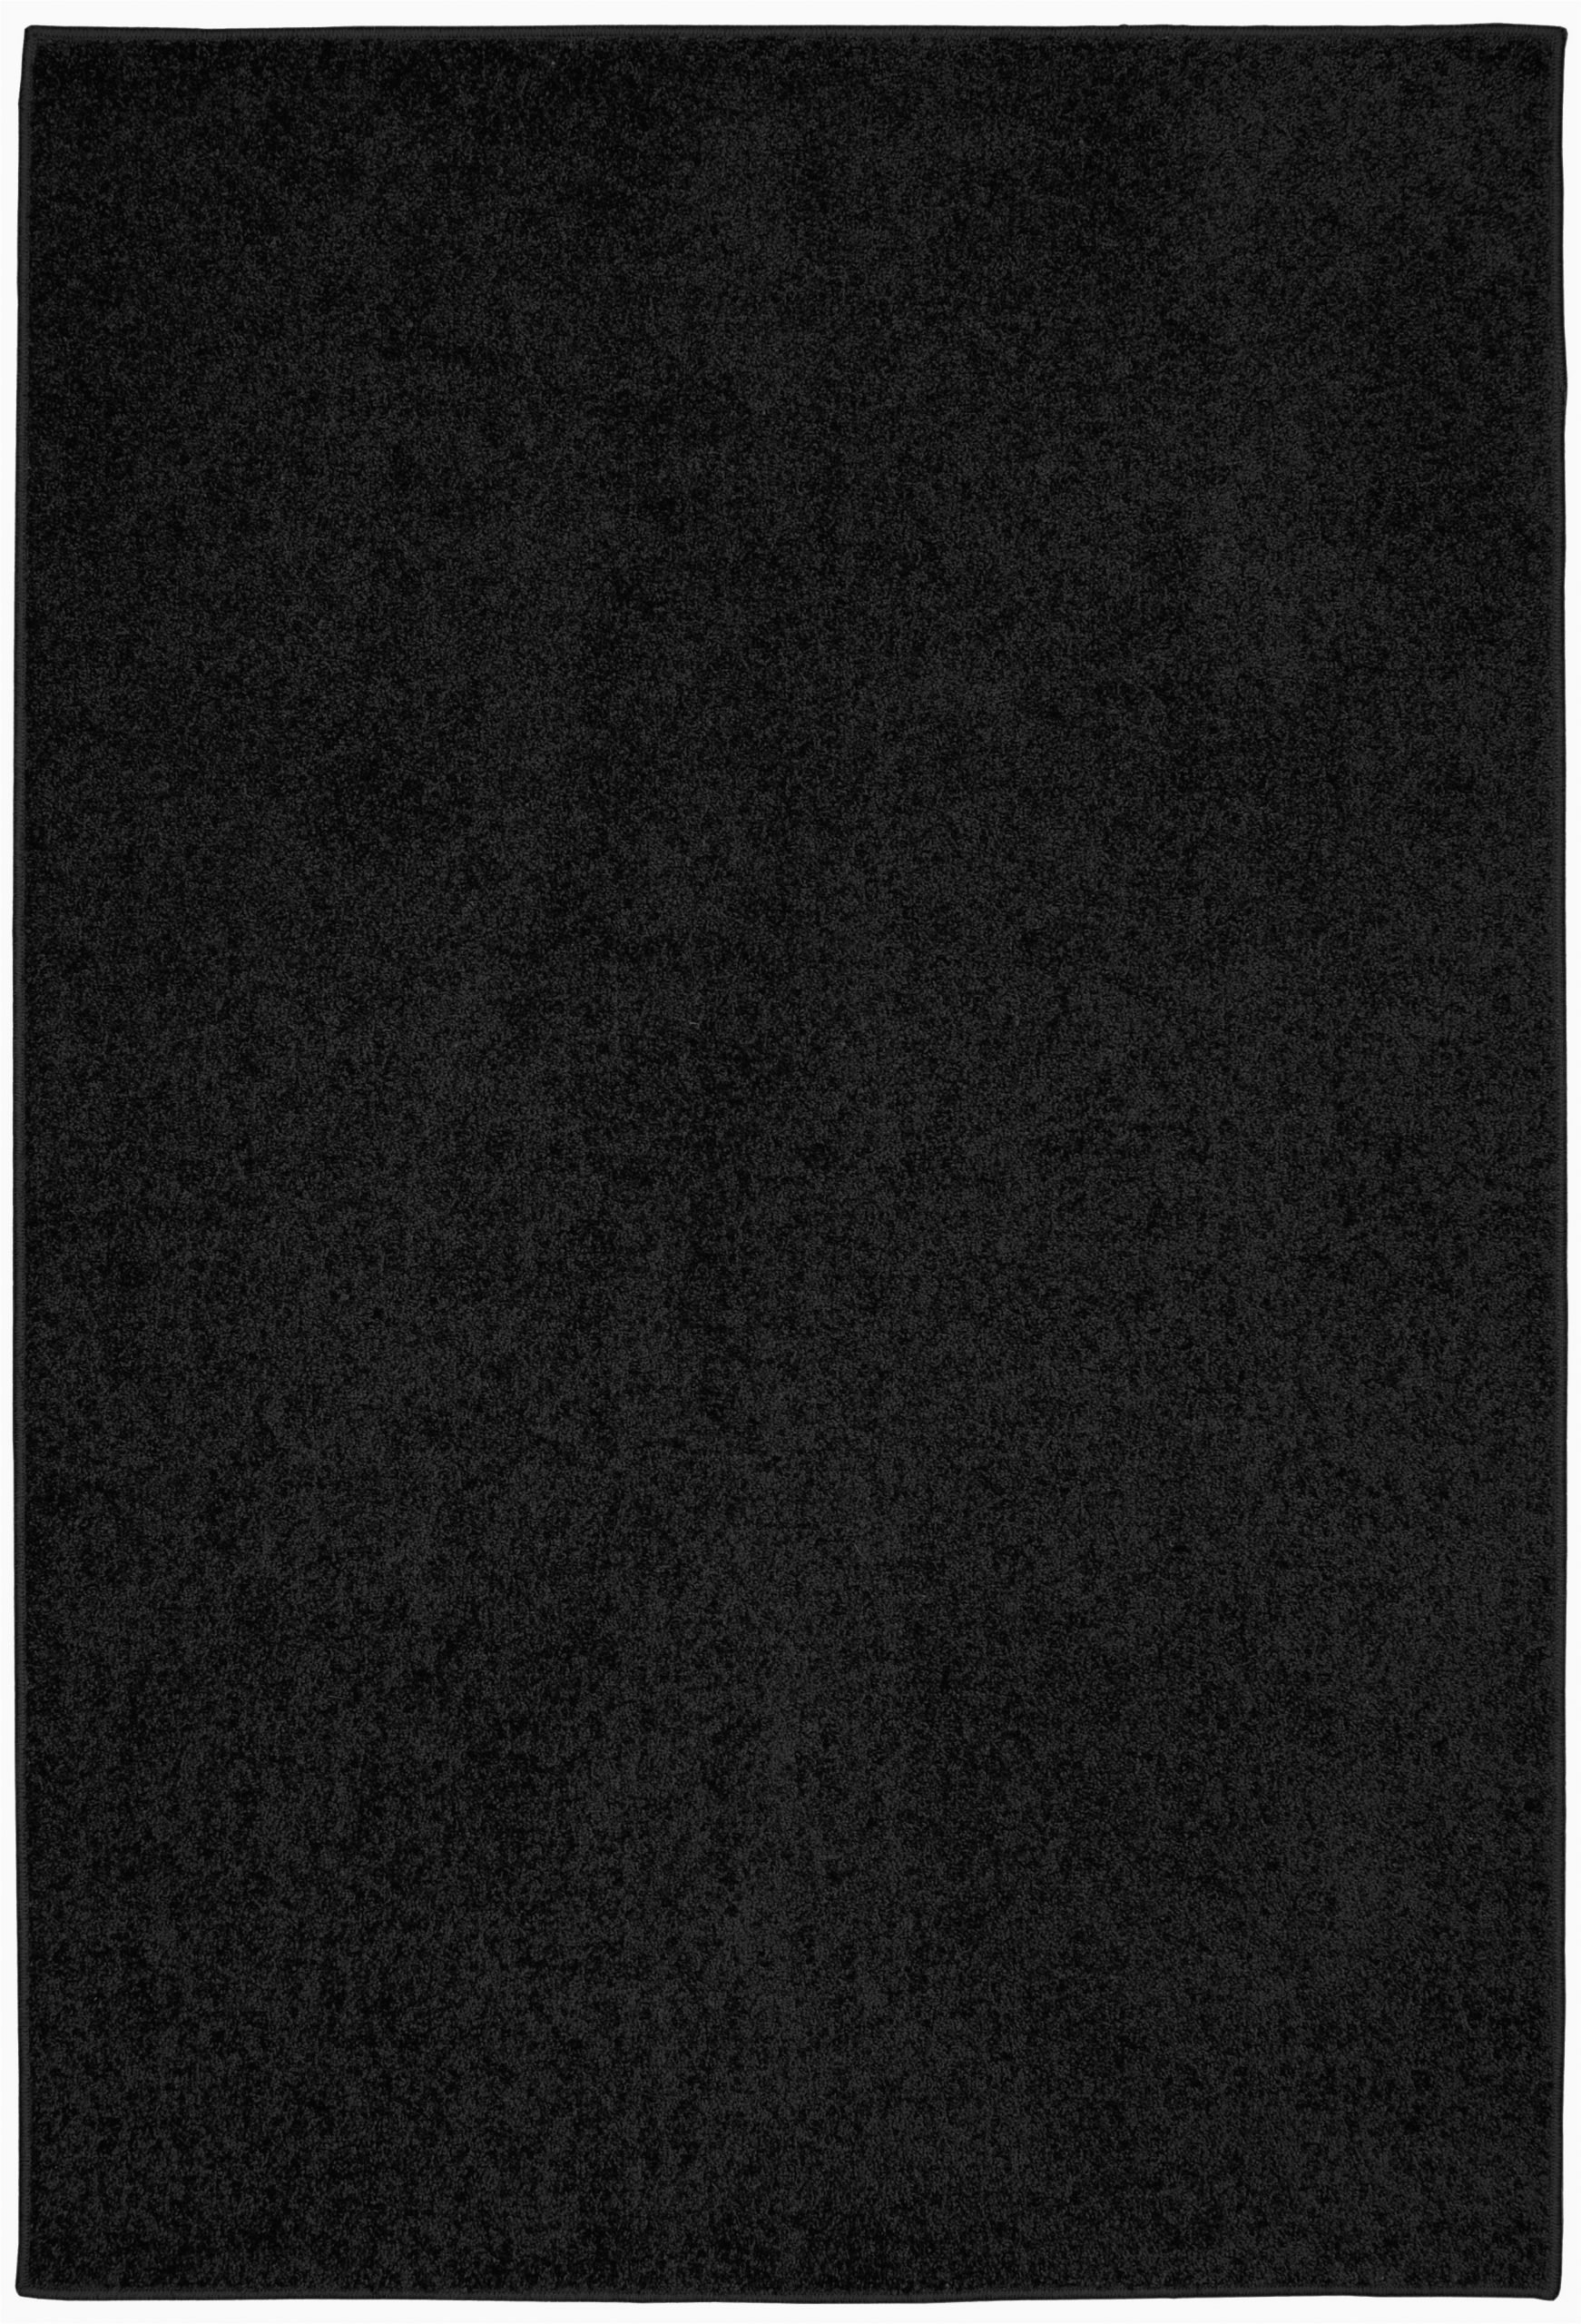 5 X 7 Black area Rug Selders Plush Tufted "5 X 7" Black Indoor area Rug